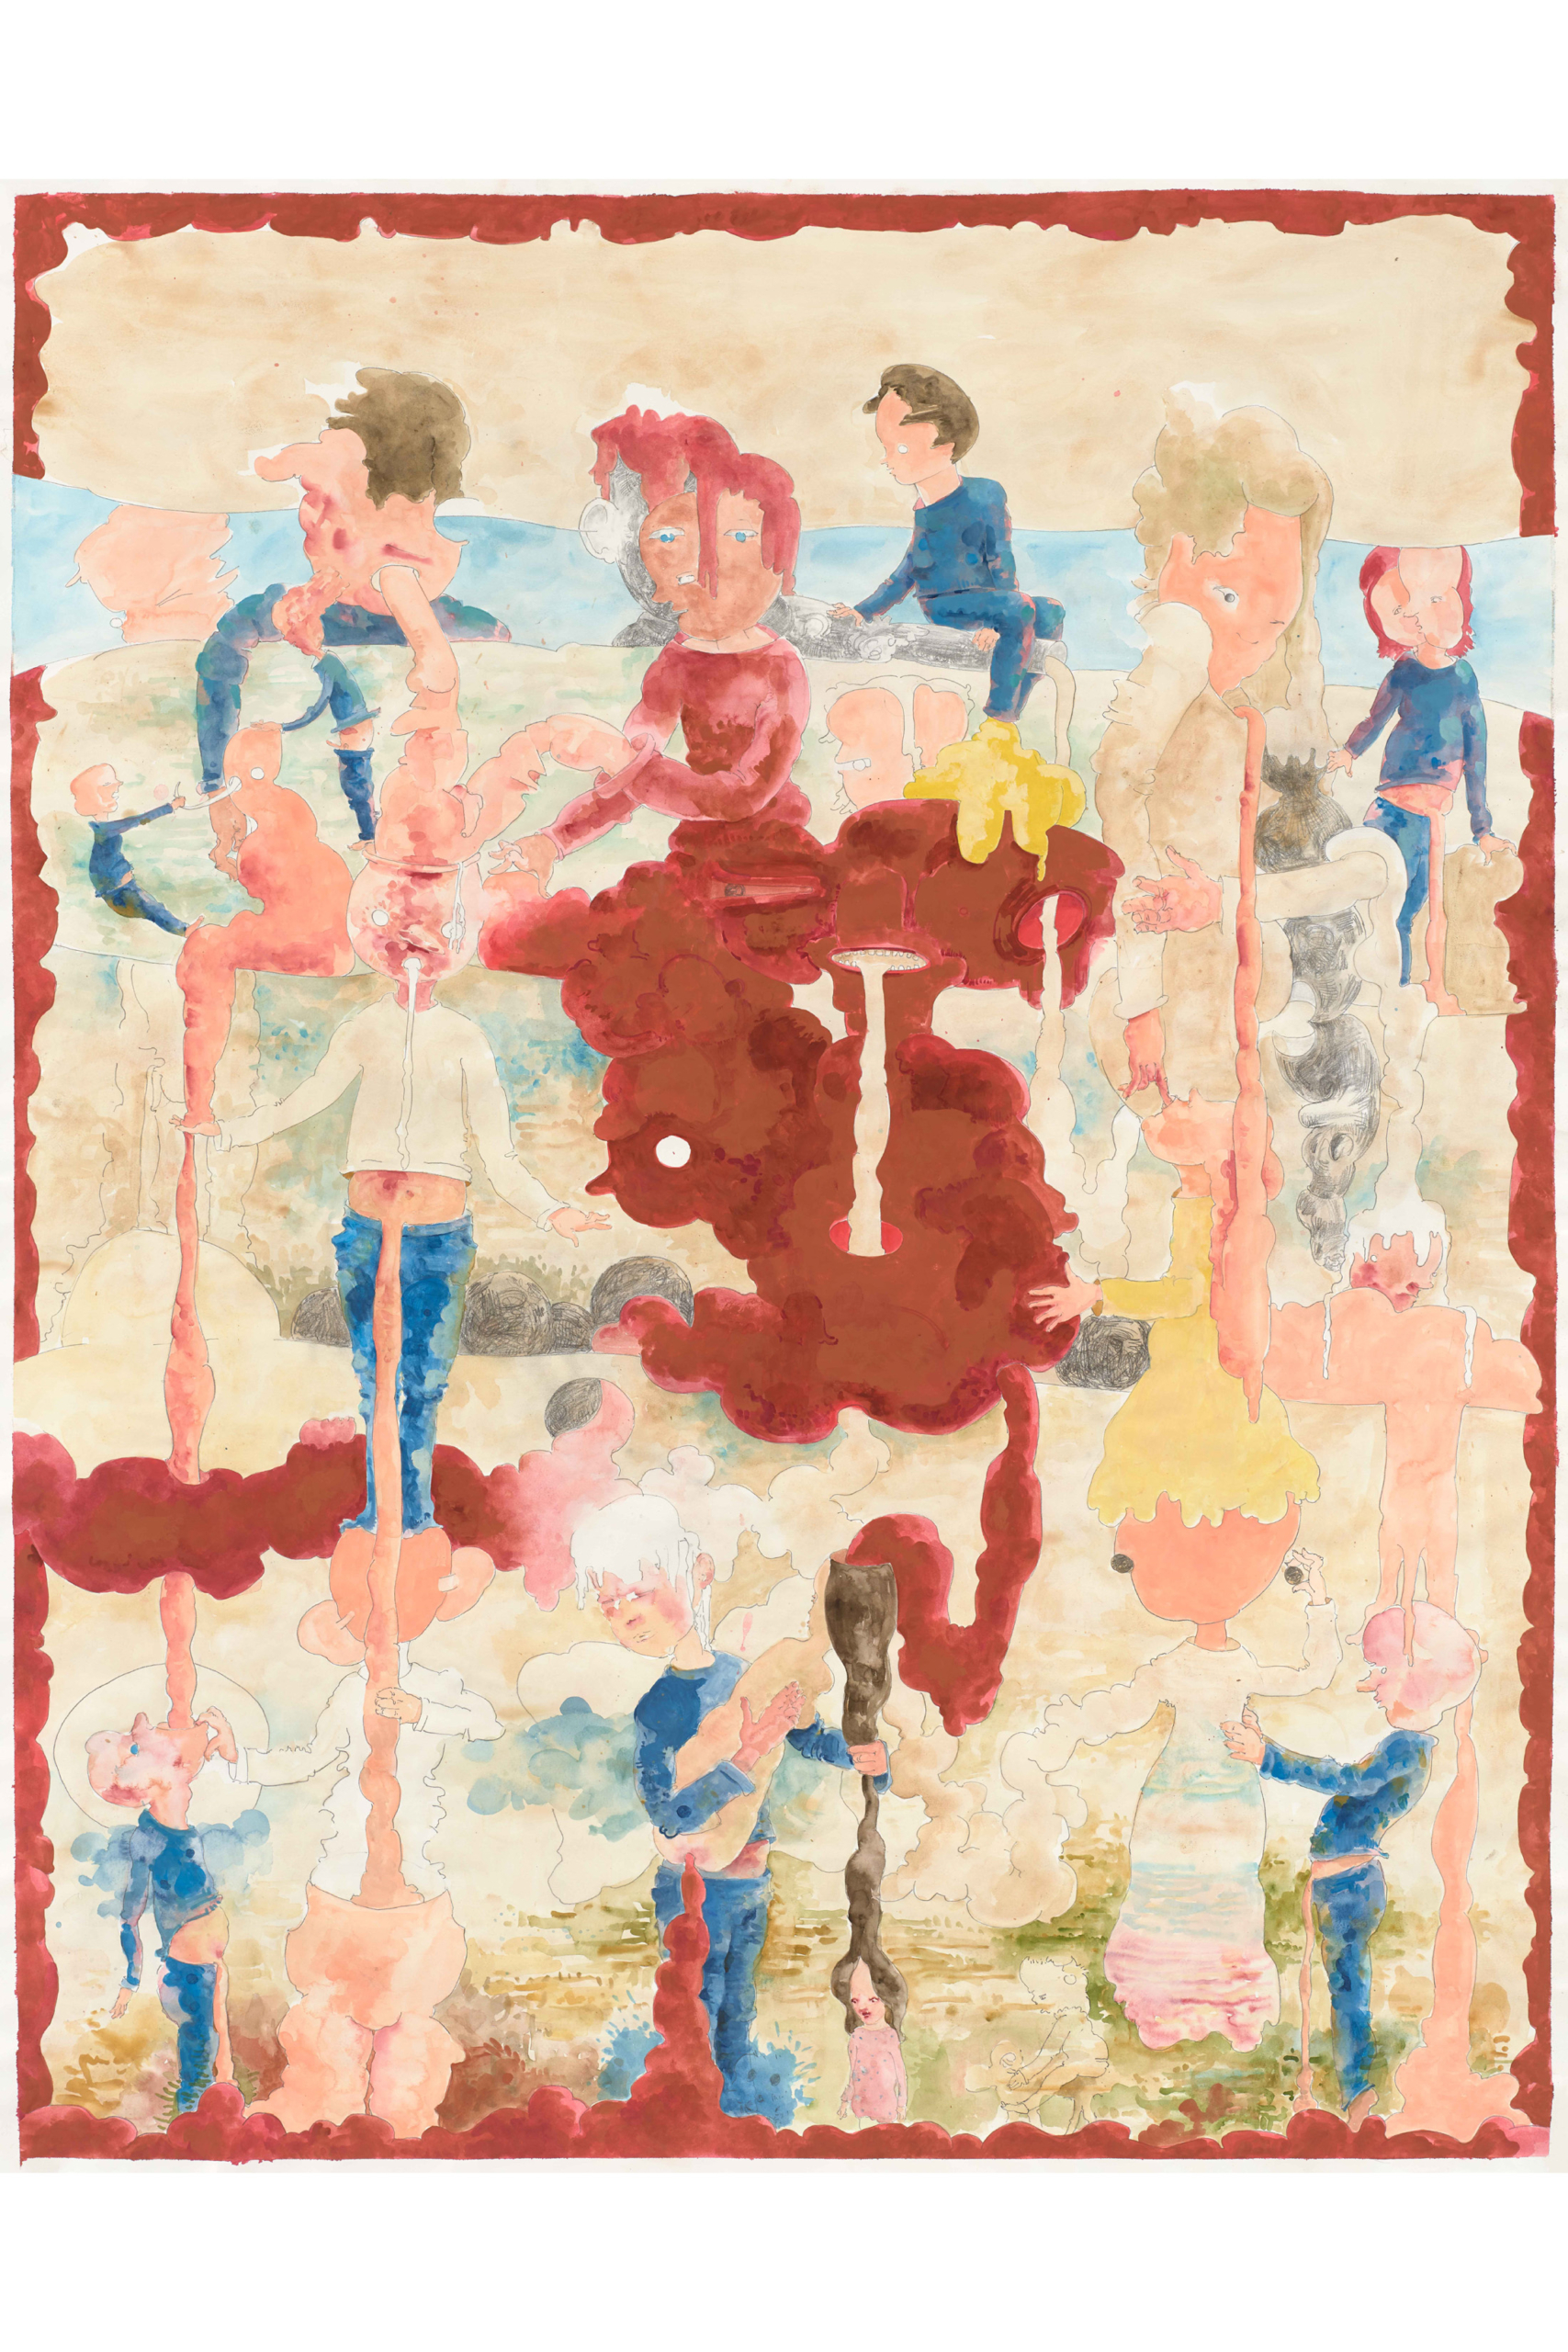 Michael Kalmbach – Trickle Down Theorie – 2019, Gouche-Bleistift auf Papier, 150x117cm – galerie metzger art kunst gallery